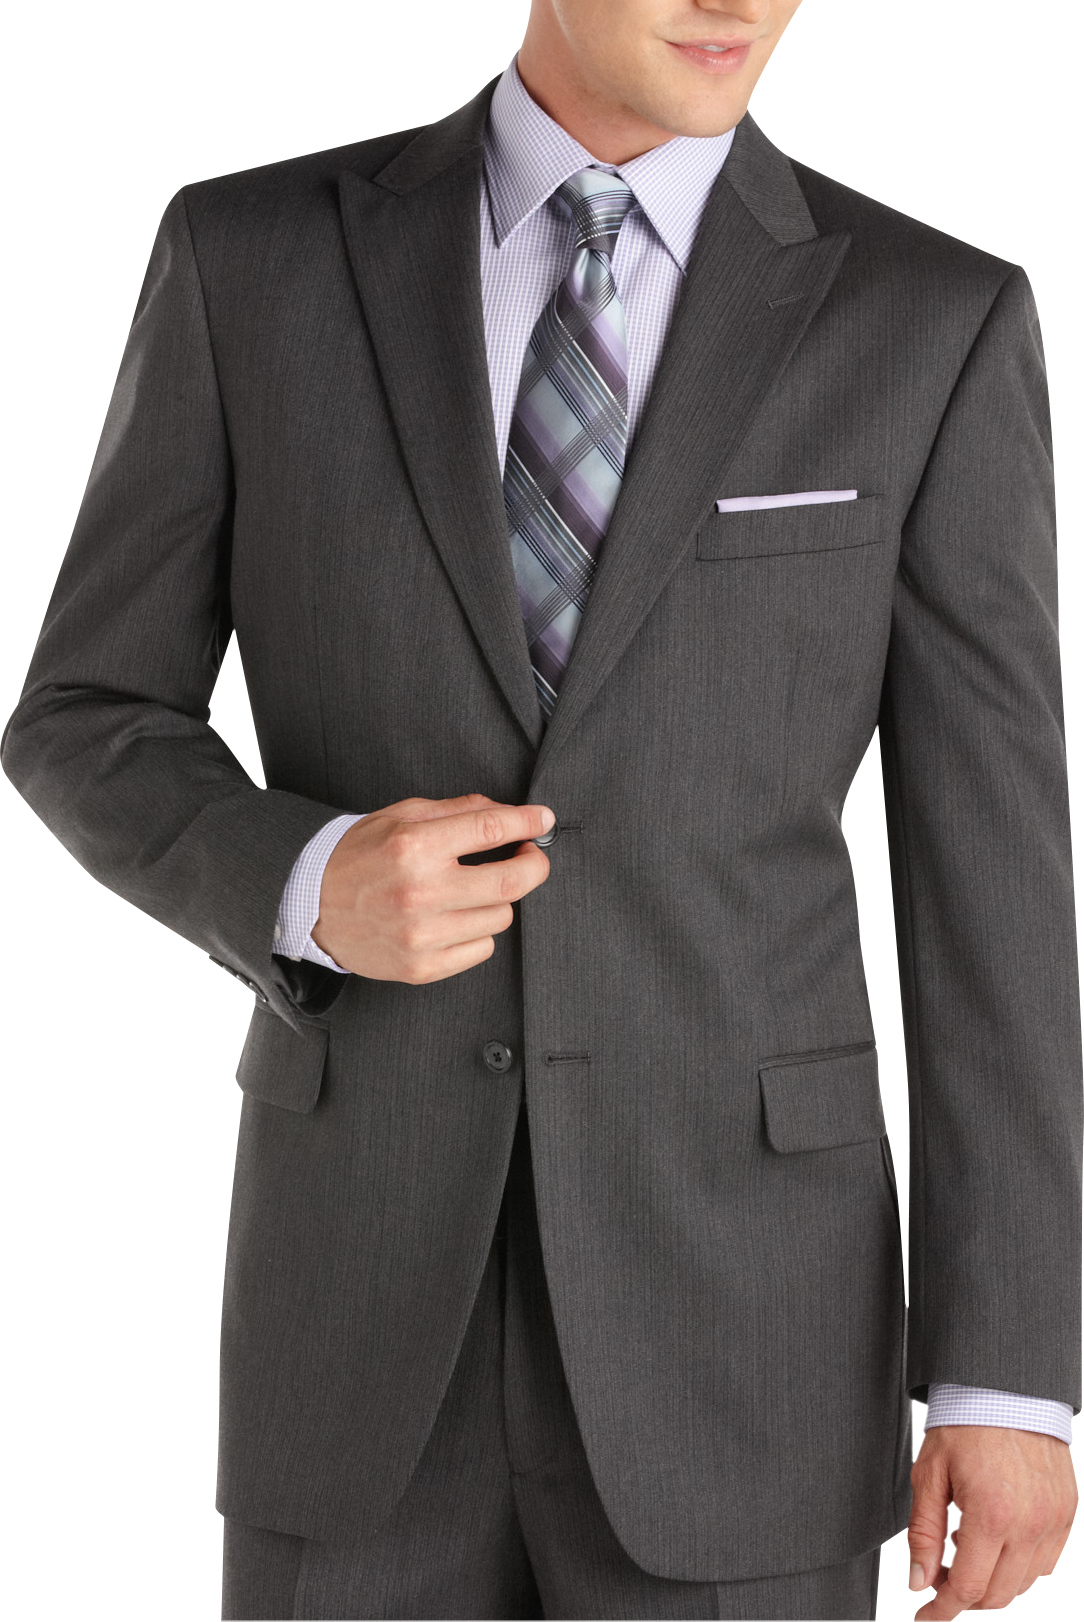 Jones New York Charcoal Stripe Peak Lapel Modern Fit Suit - Men's Suits ...